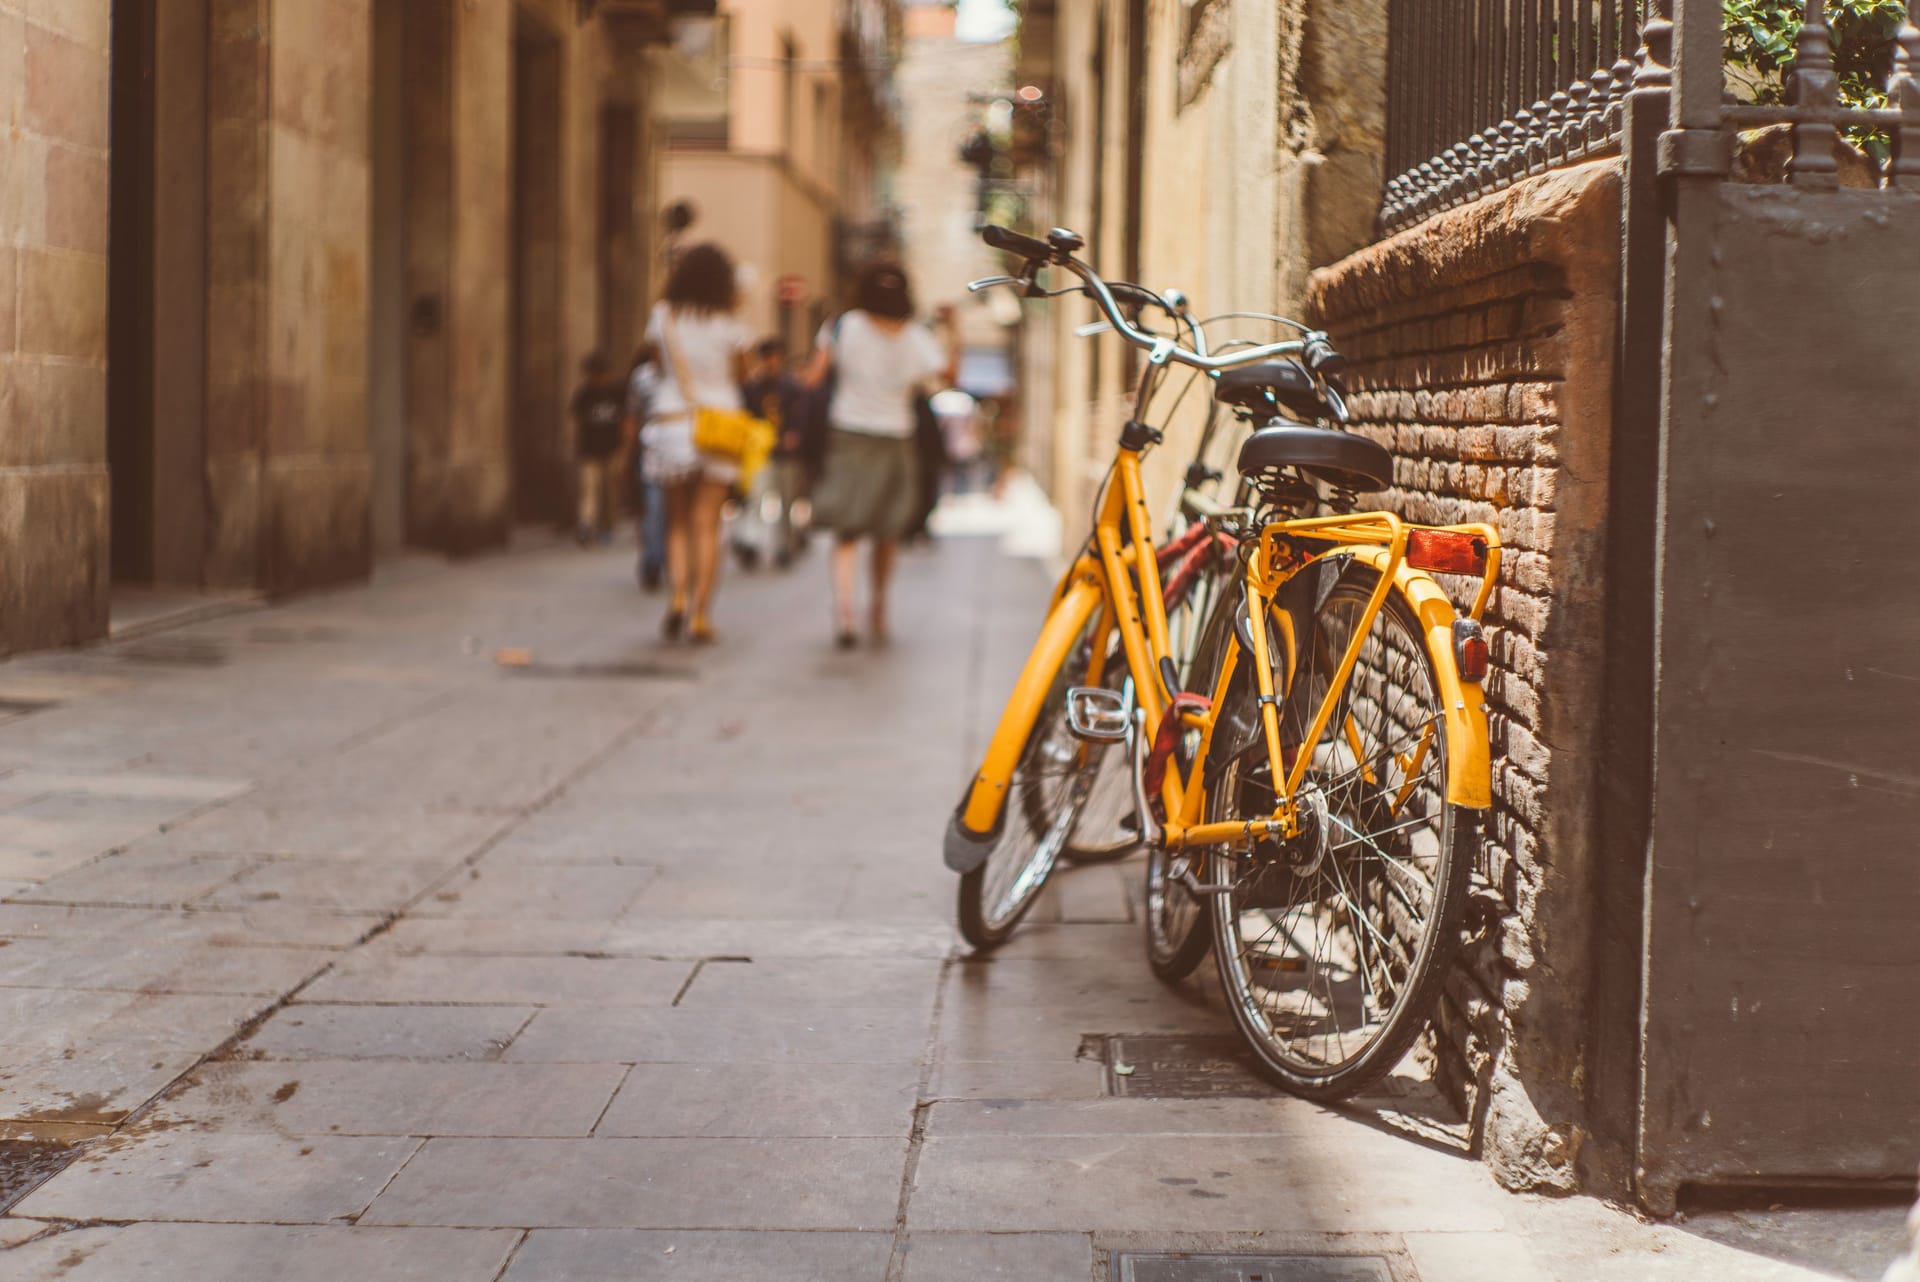 Hübscher Schnappschuss in den Gassen von Barcelona: Ein sonnengelbes Fahrrad lehnt an einer Hauswand.